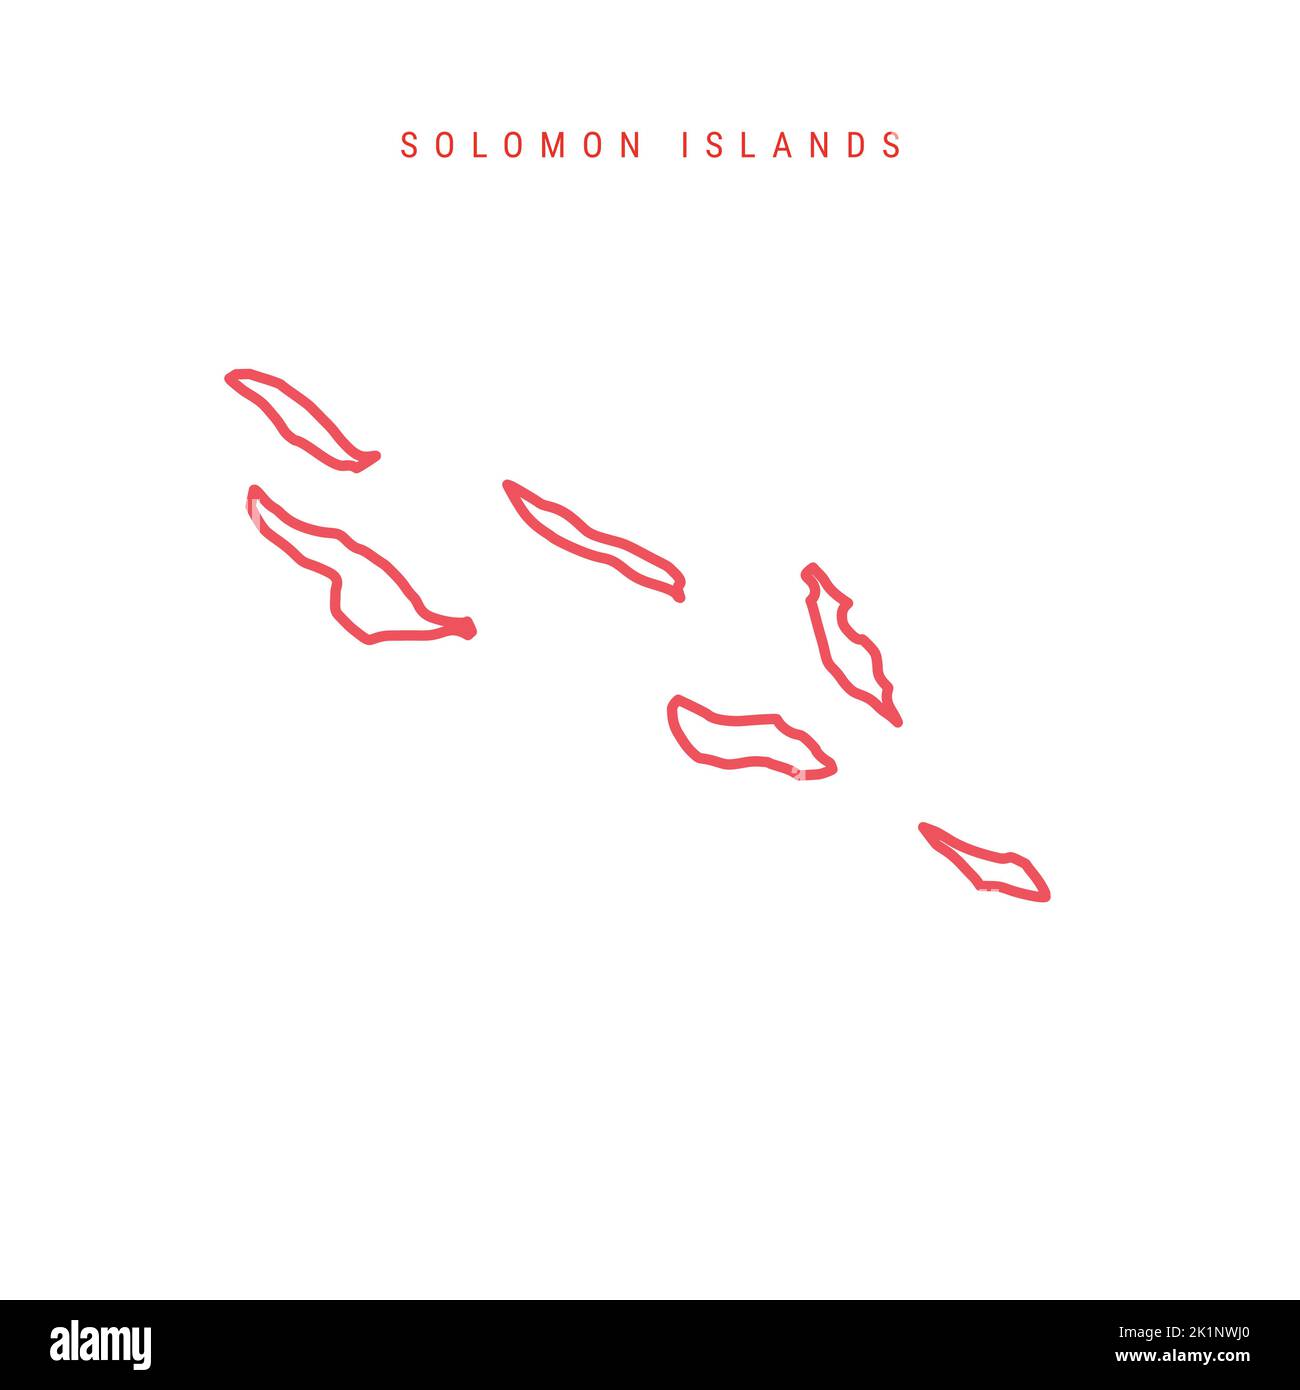 Solomon Islands editierbare Gliederungskarte. Melanesischer roter Rand. Ländername. Linienstärke anpassen. Zu einer beliebigen Farbe wechseln. Vektorgrafik. Stock Vektor